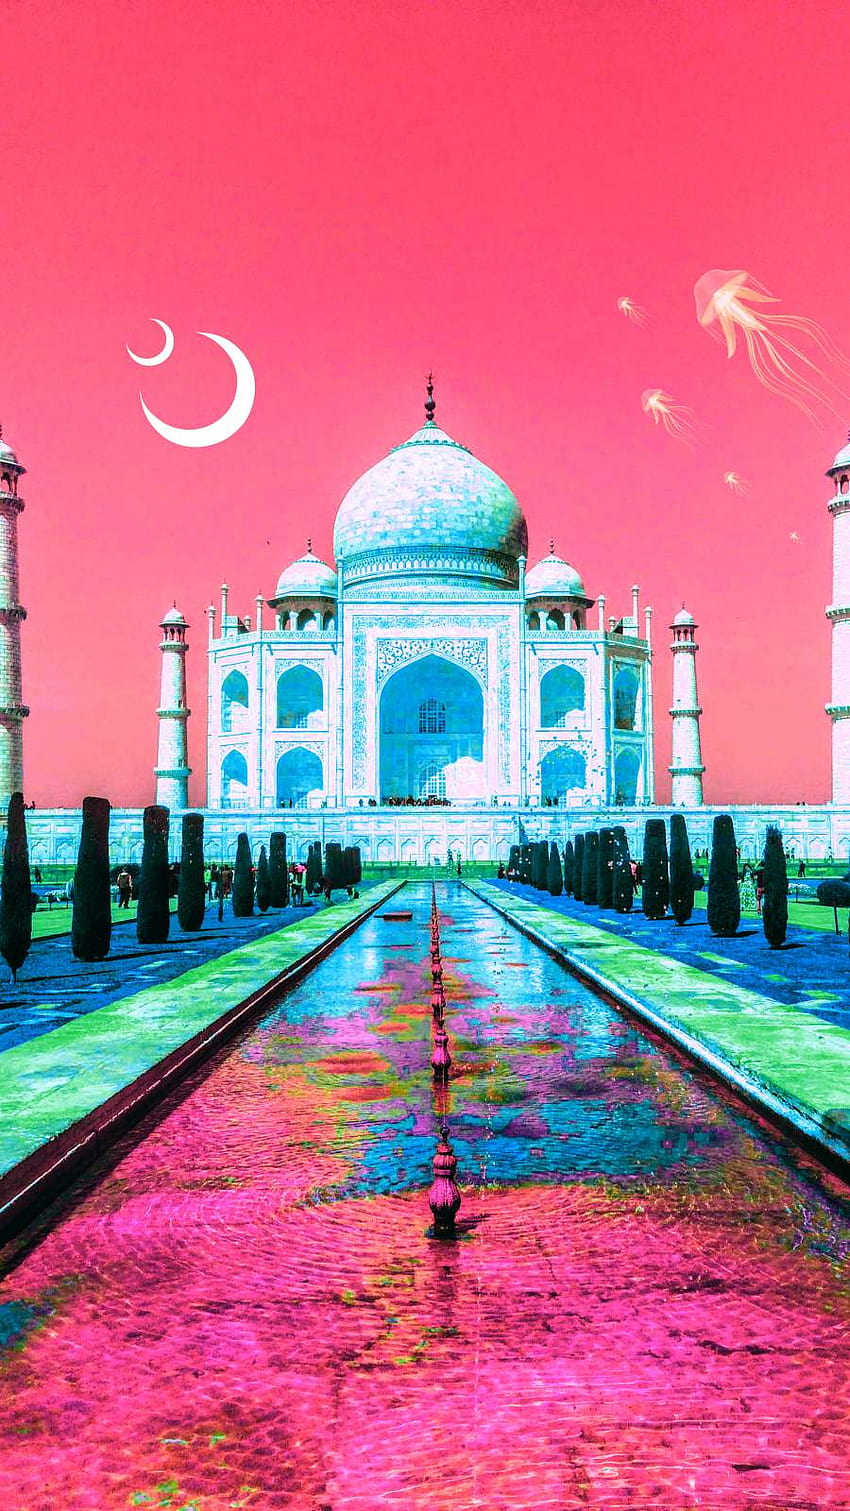 Taj Mahal Love IPhone, taj mahal iphone HD phone wallpaper | Pxfuel